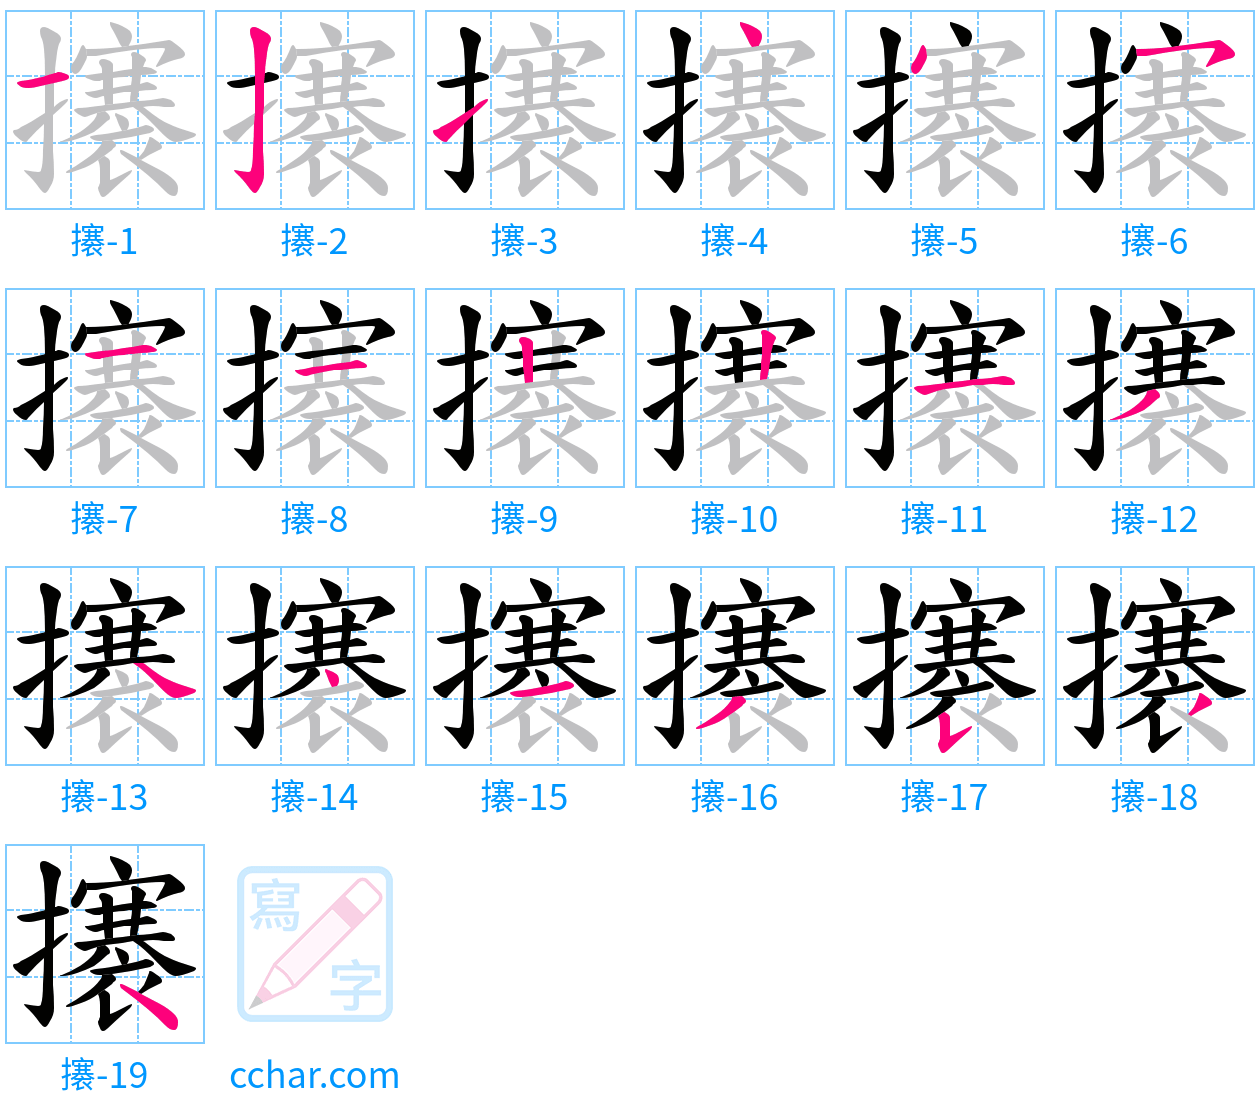 攐 stroke order step-by-step diagram